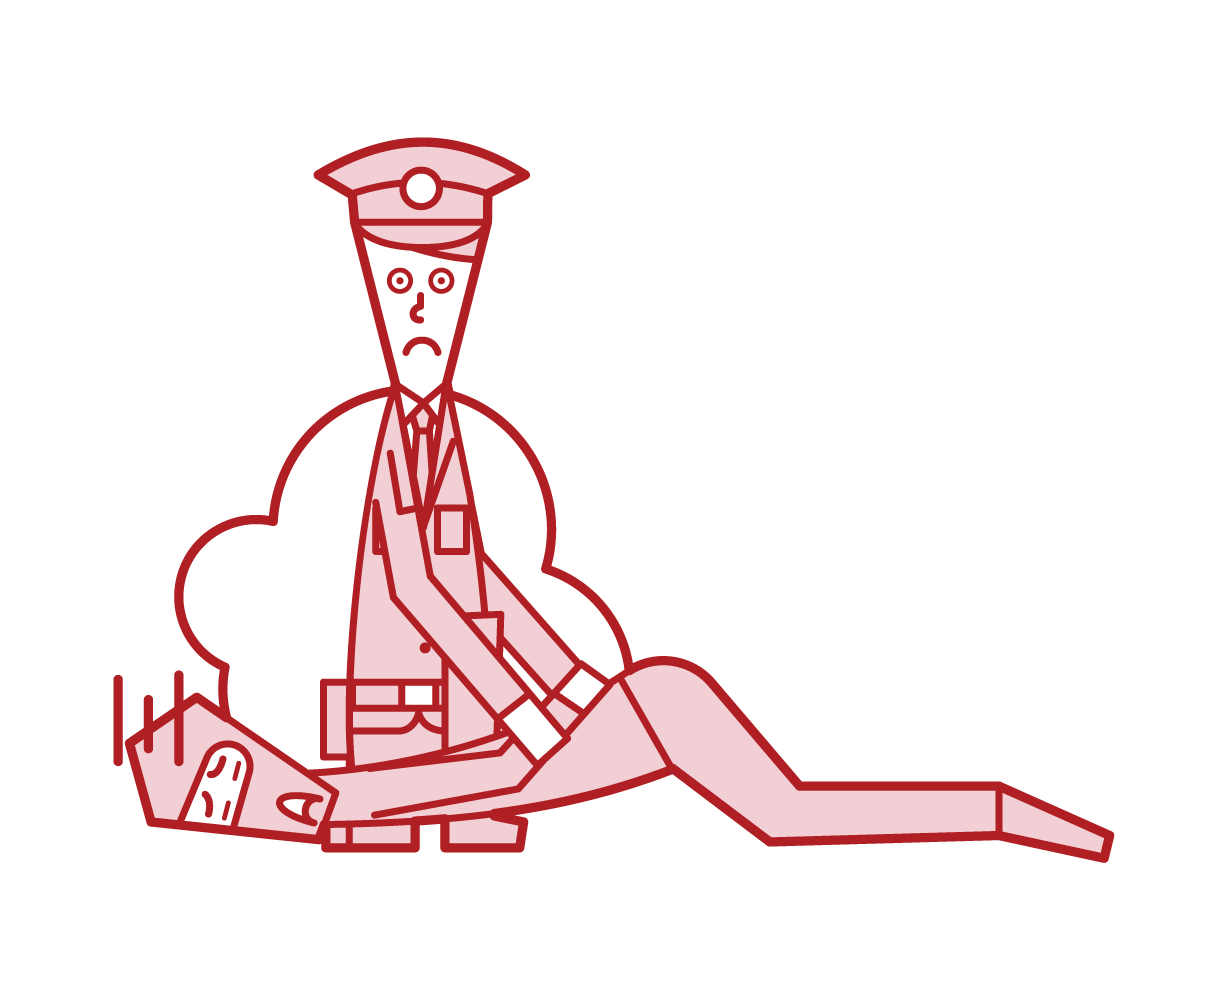 員警（男性）的插圖，以處理強盜